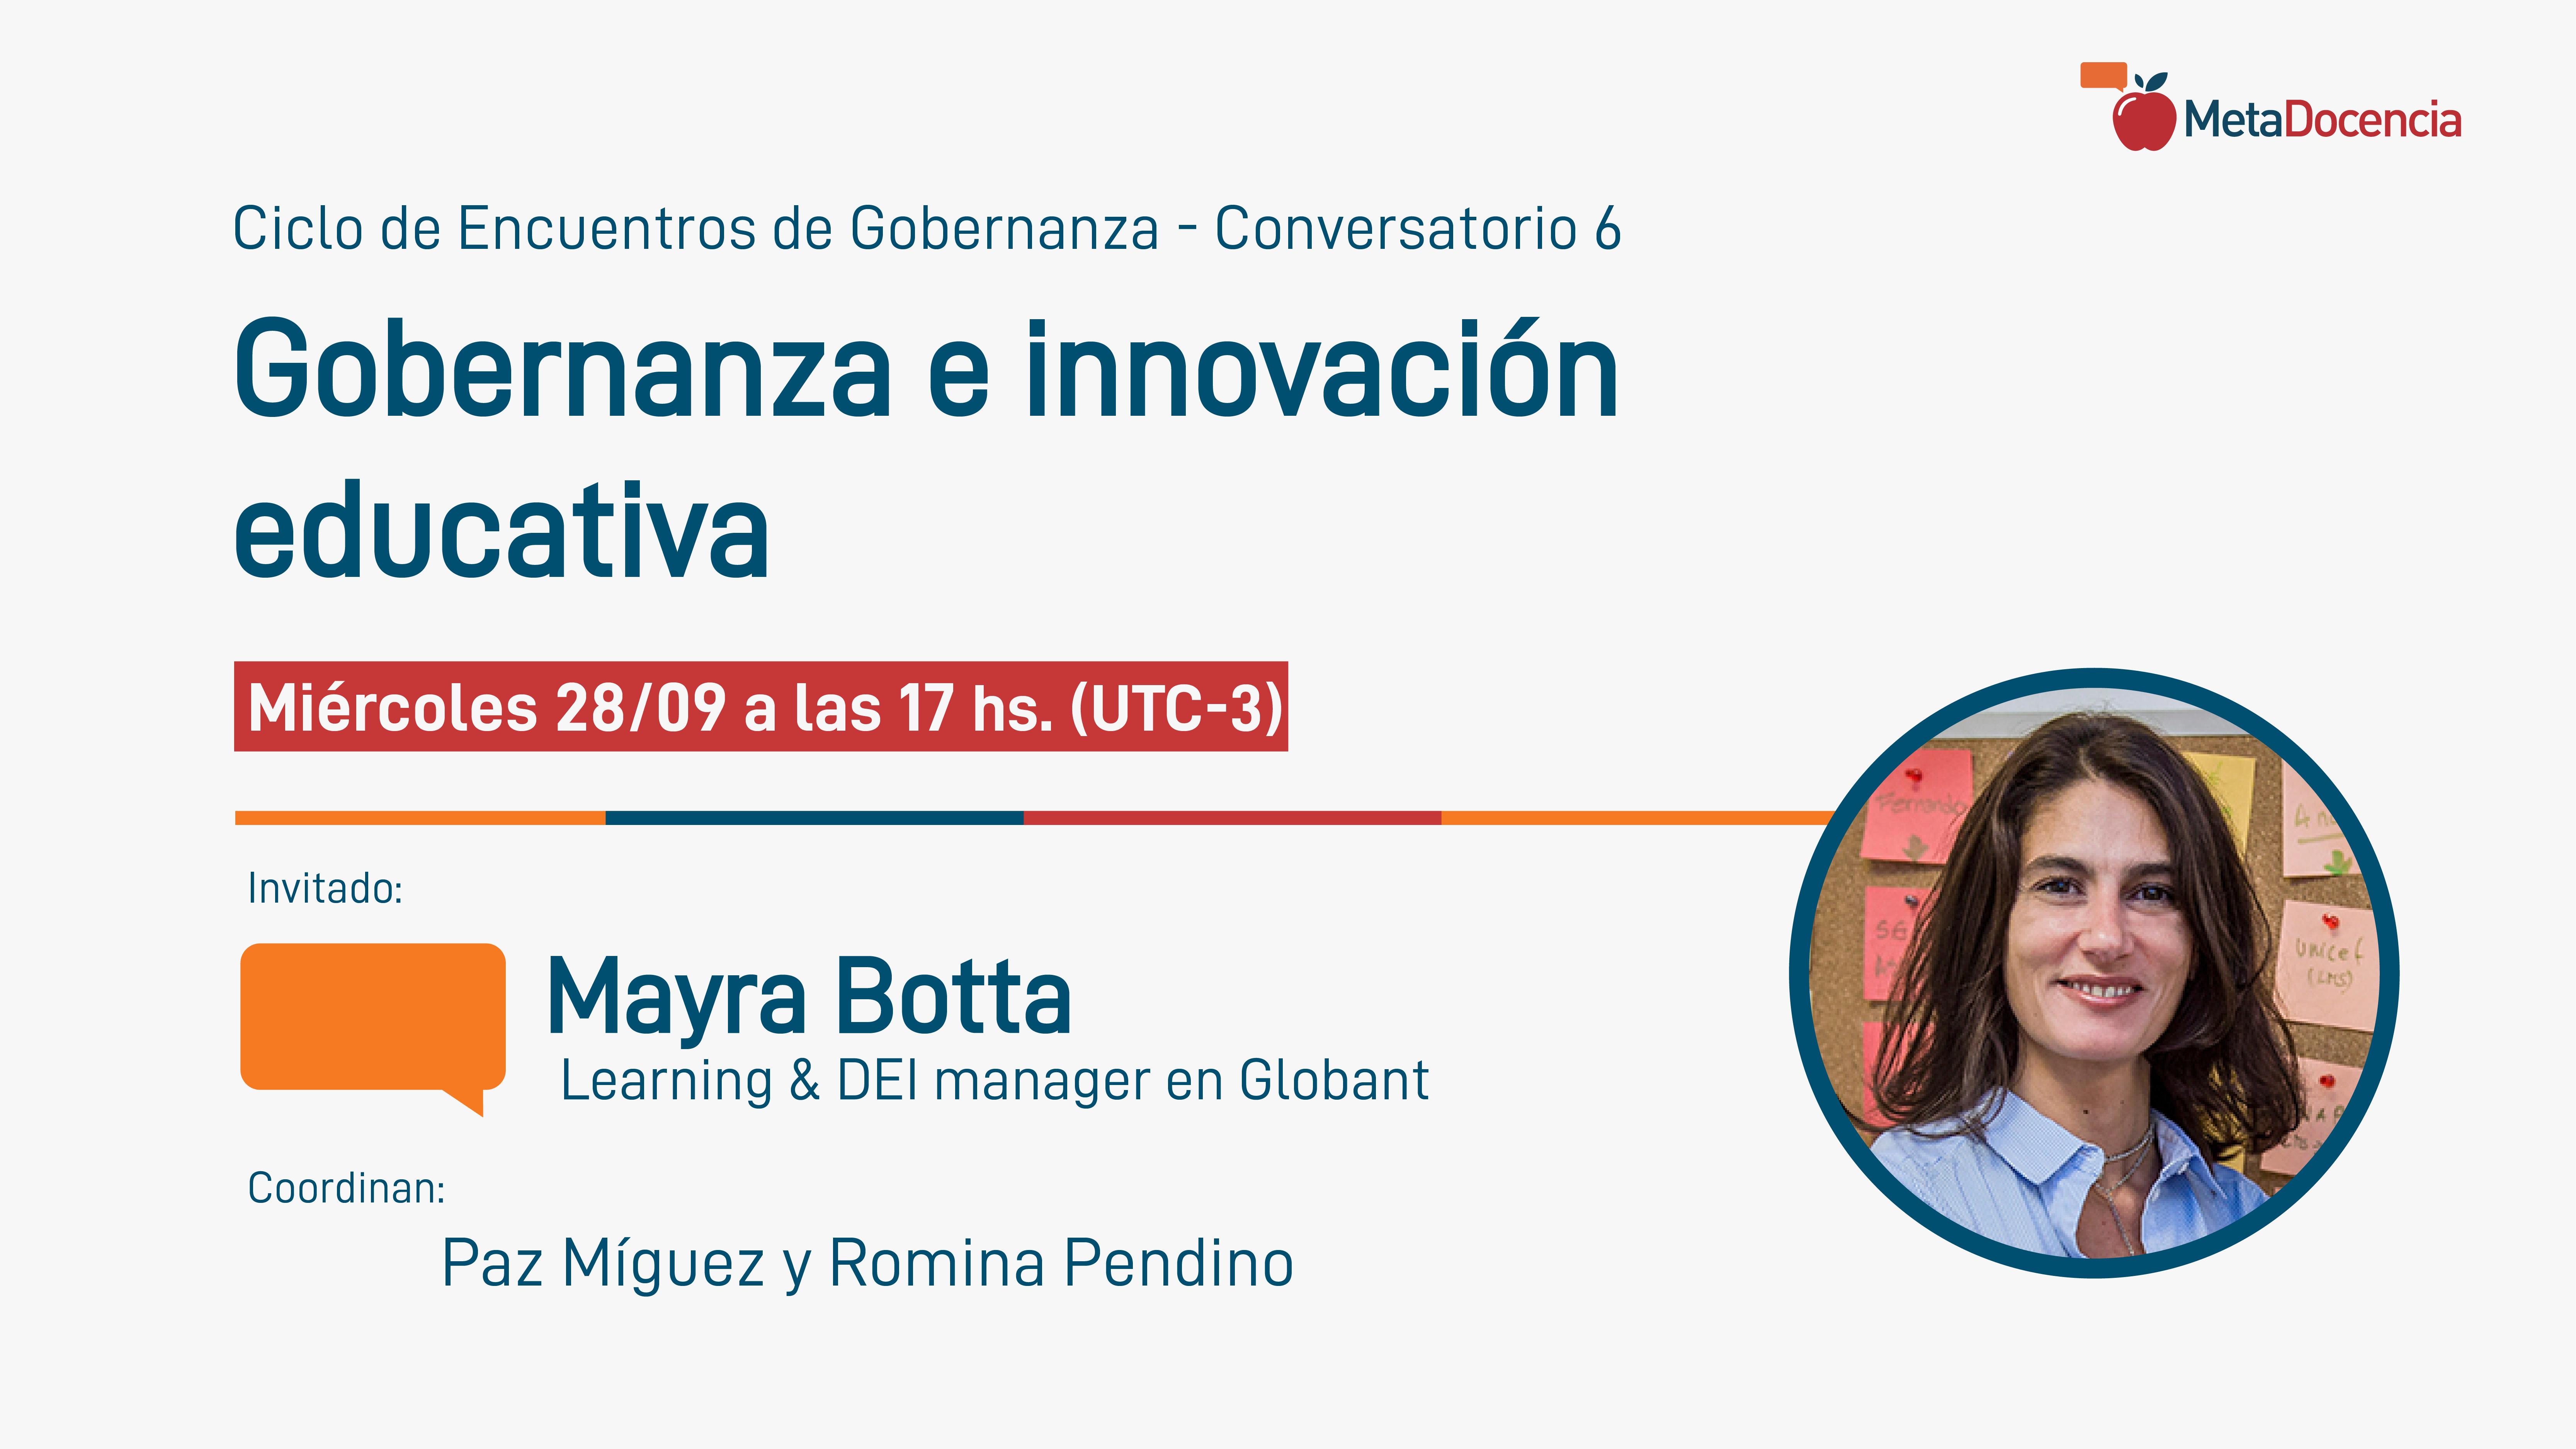 Ciclo de Encuentros de Gobernanza, Conversatorio 6. Mayra Botta - Gobernanza e innovación educativa. Miércoles 28/09 a las 17 hs. (UTC-3)